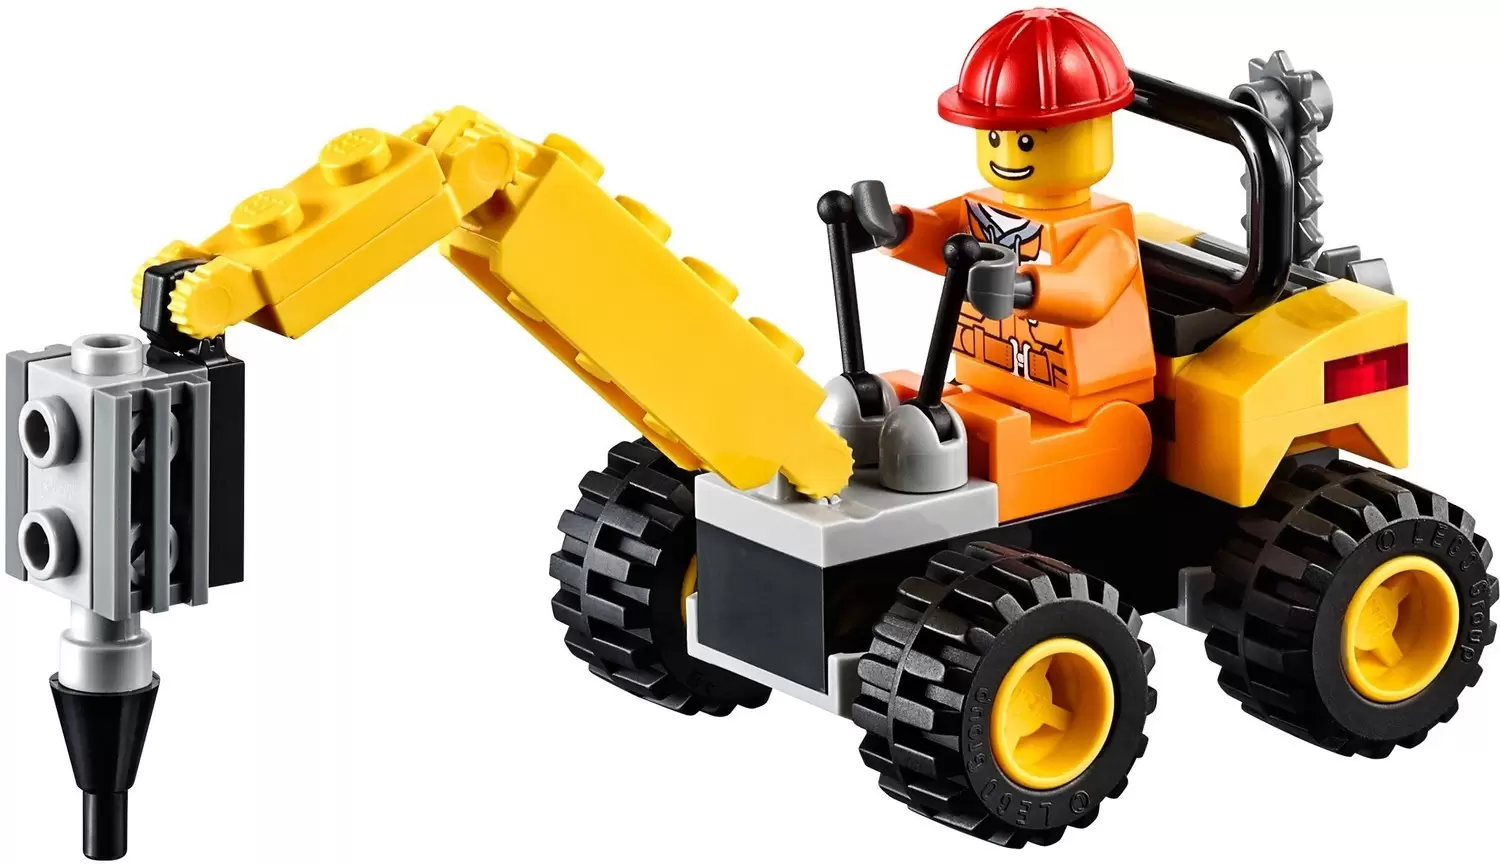 Demolition Driller - LEGO CITY set 30312